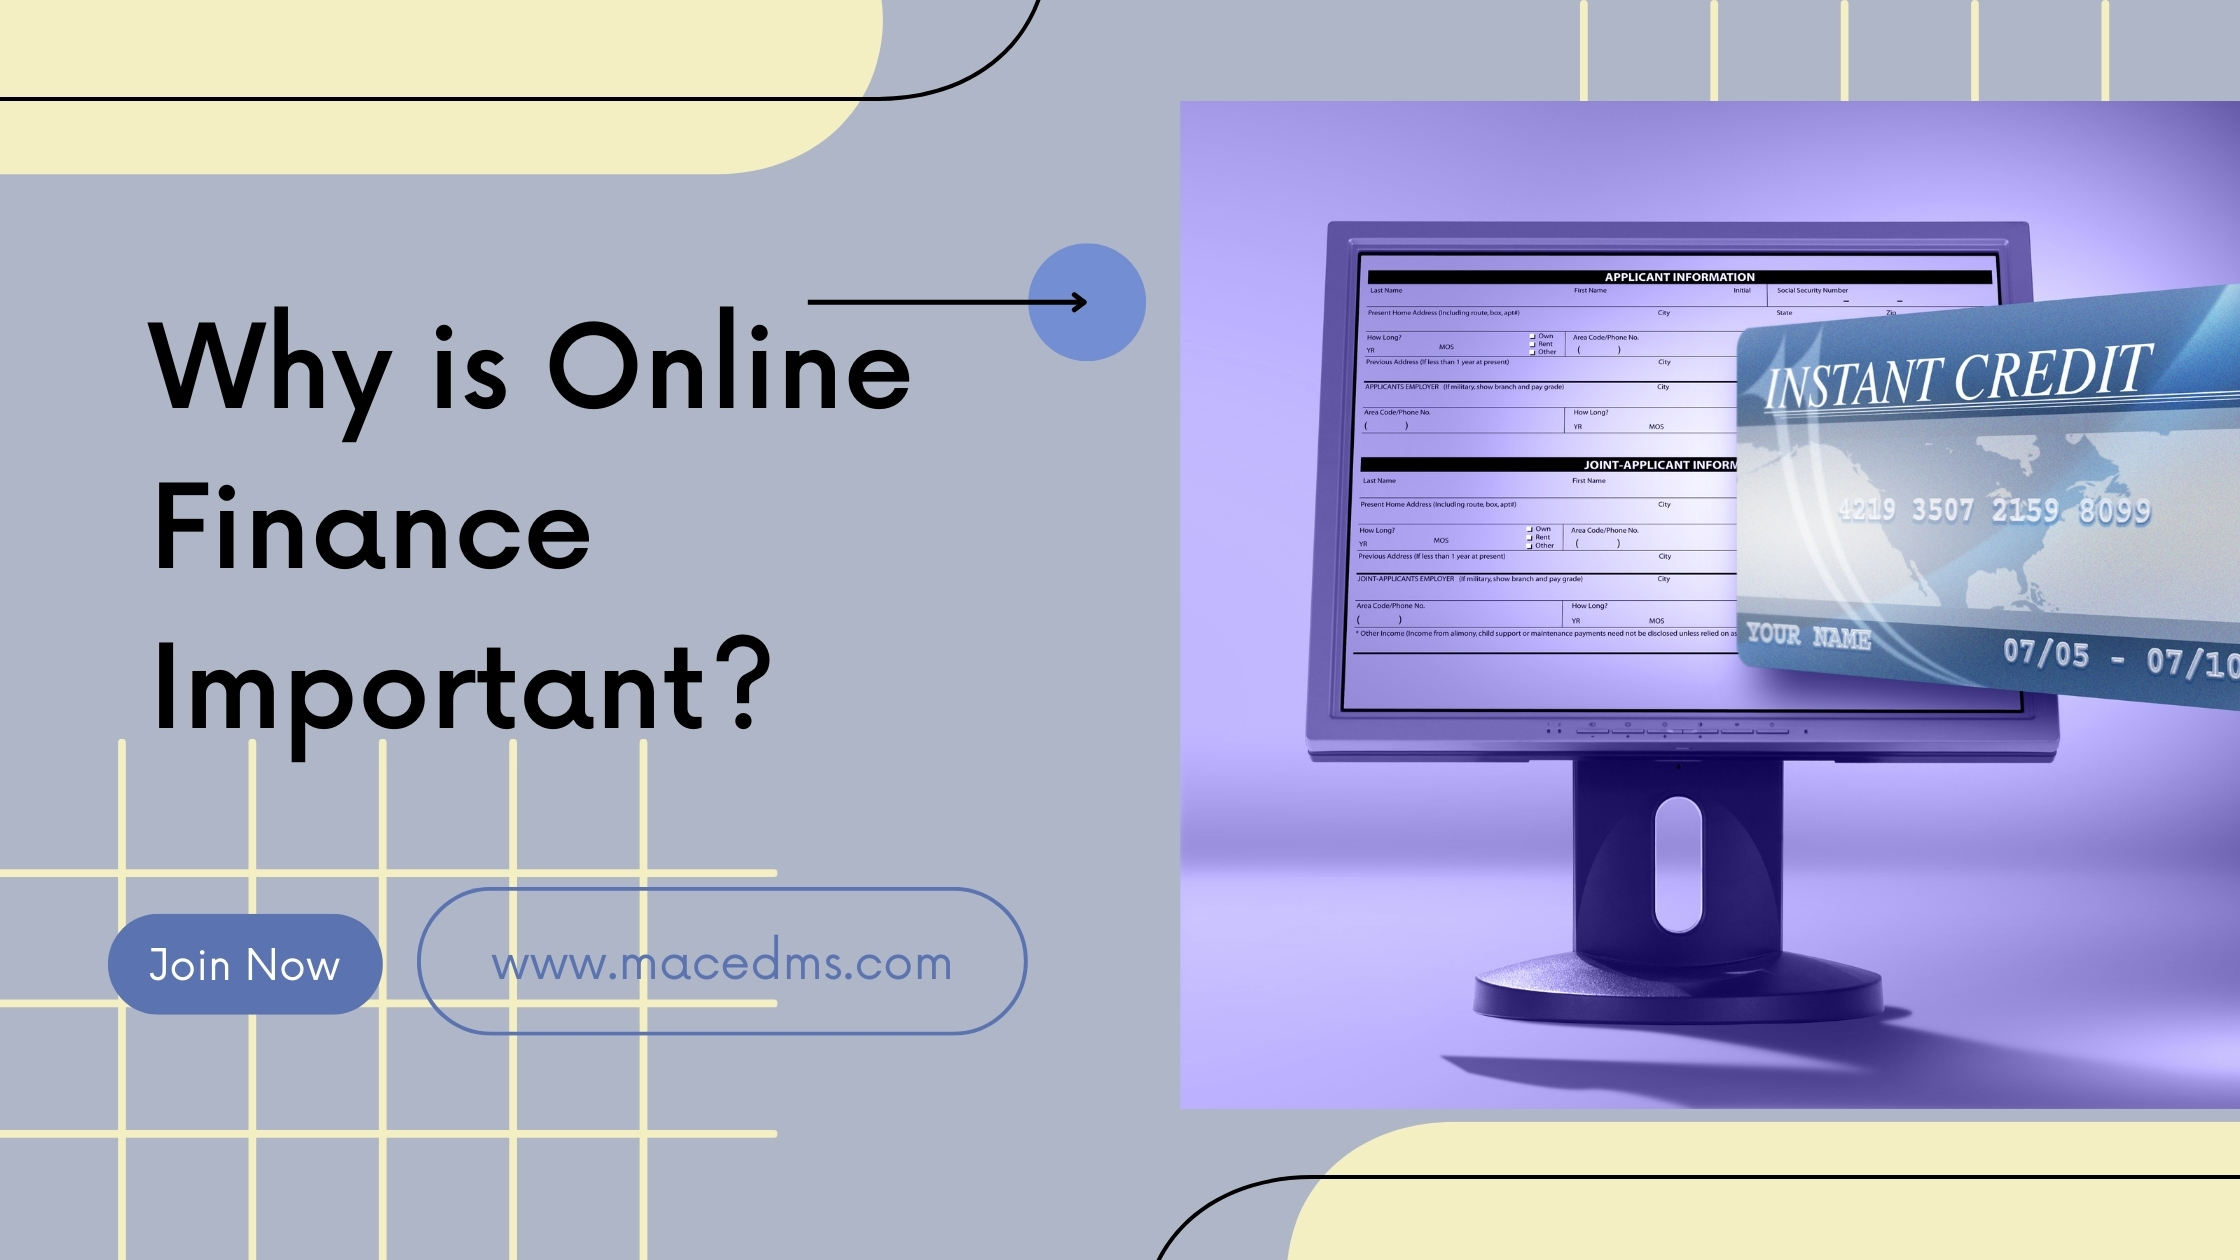 Online Finance